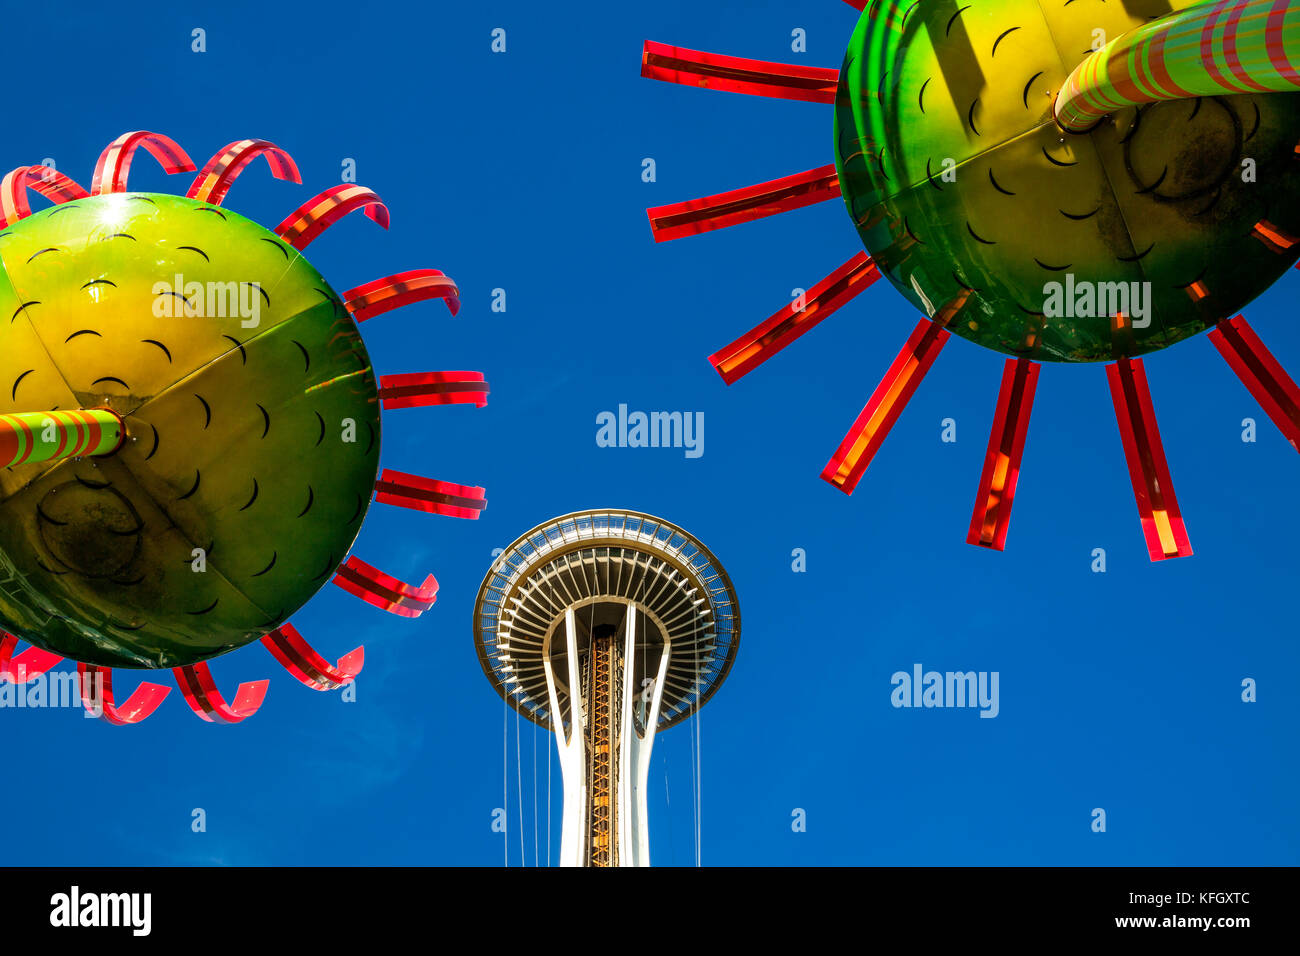 WA14144-00...WASHINGTON - Affichage appelé Sonic Bloom avec le Space Needle situé dans le centre de Seattle. Banque D'Images